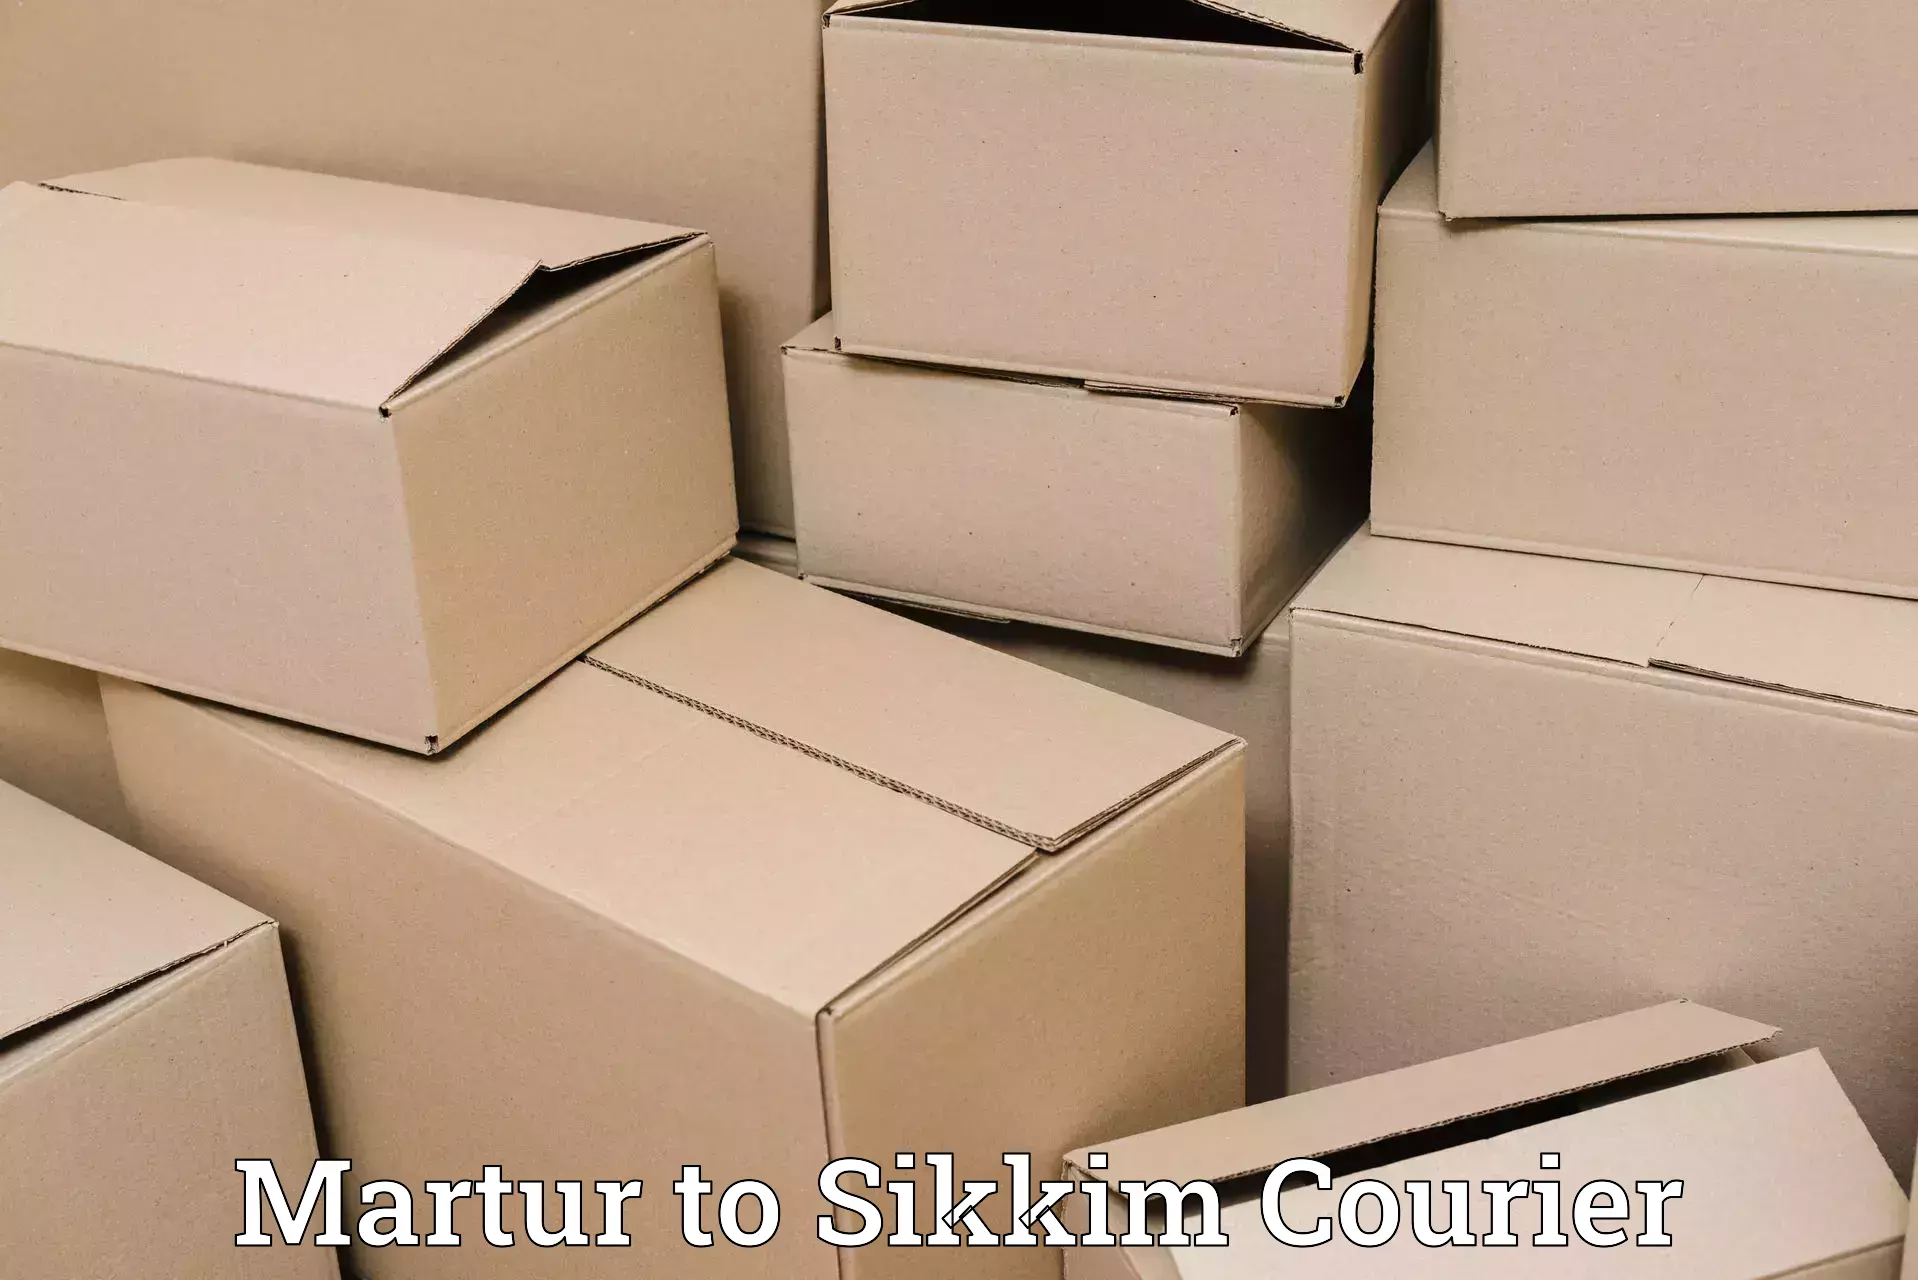 Express logistics providers Martur to Gangtok